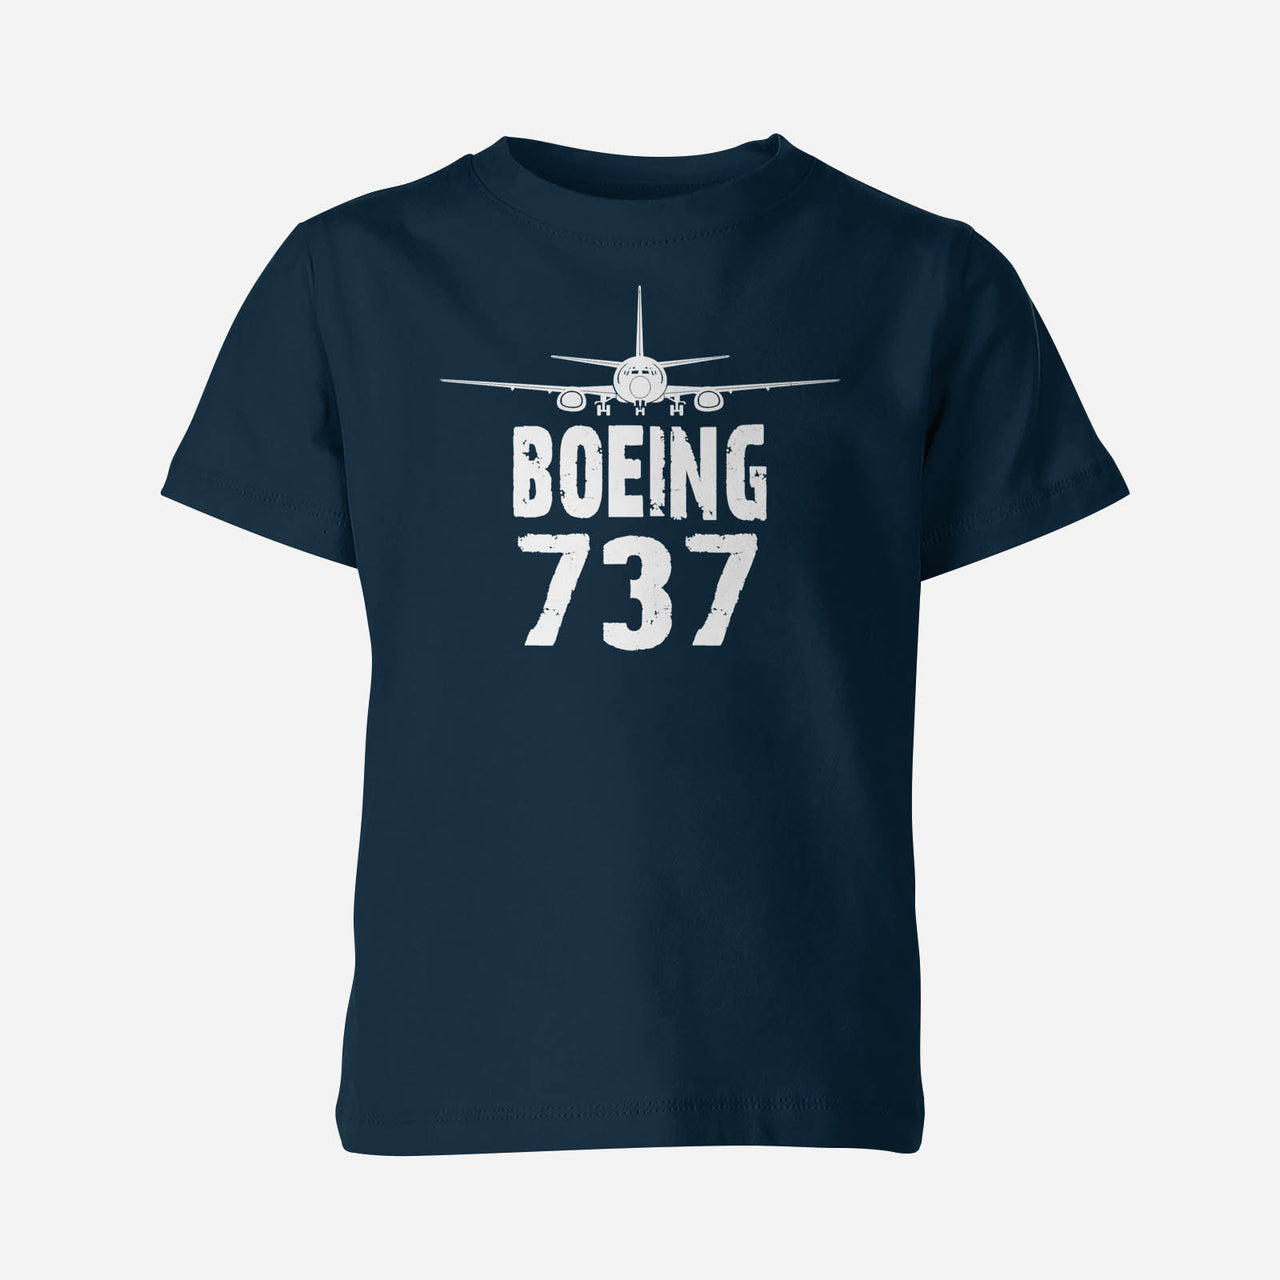 Boeing 737 & Plane Designed Children T-Shirts